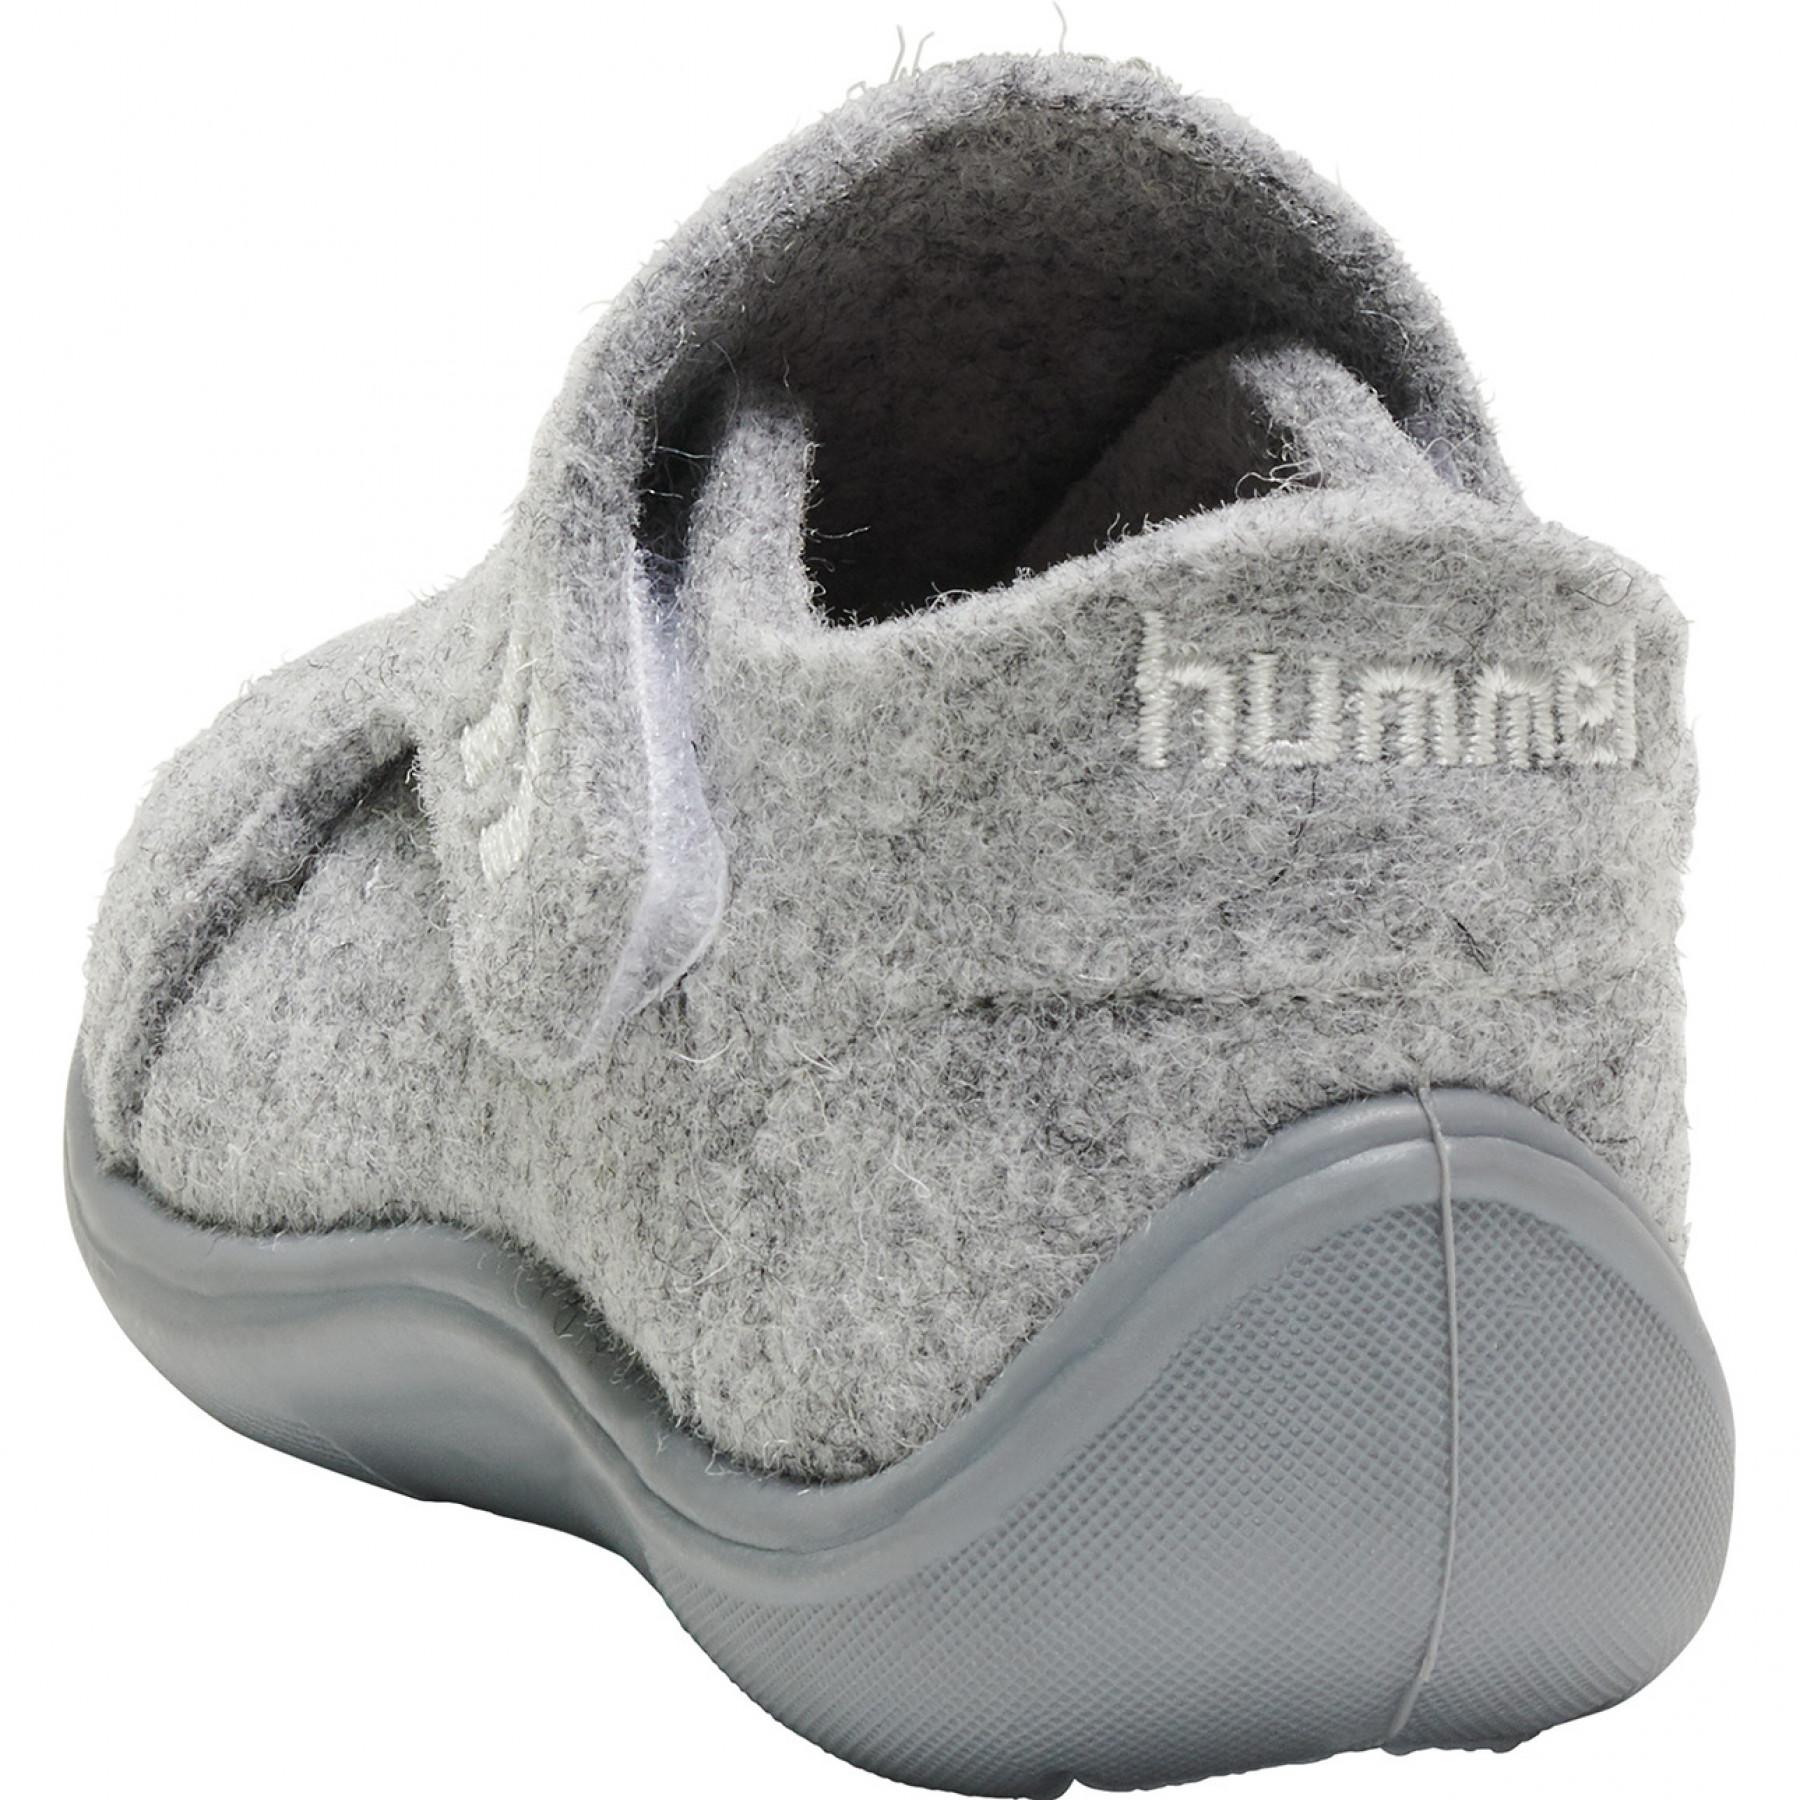 Trenerzy dziecięcy Hummel wool slipper